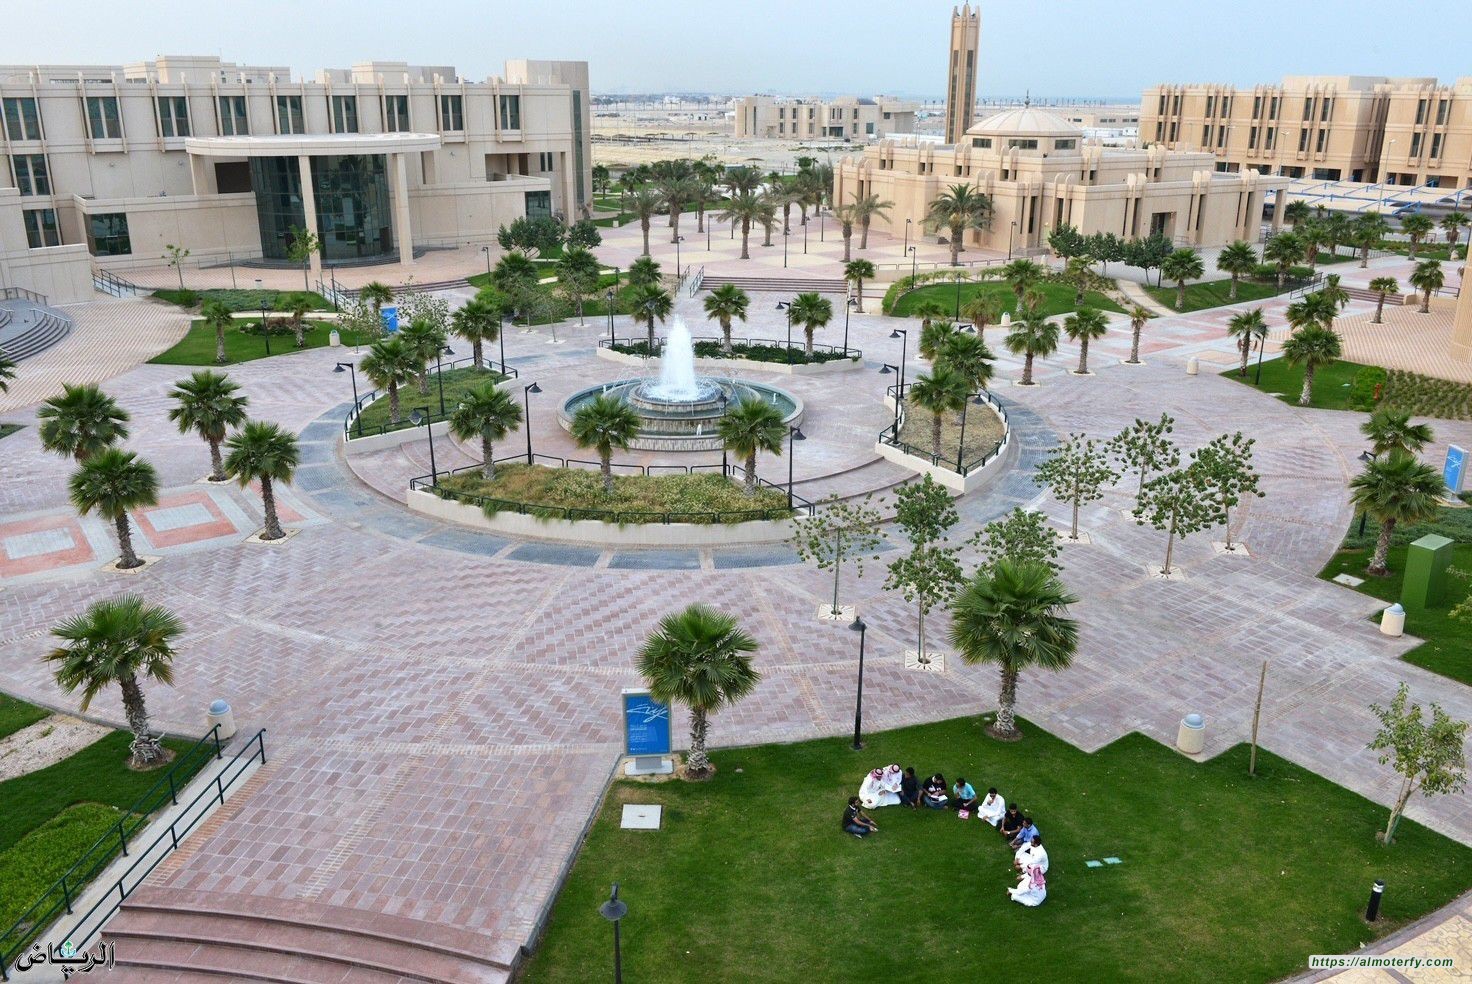 جامعة الإمام عبد الرحمن بن فيصل تطلق مشروع الحديقة المركزية على مساحة 15 ألف متر مربع السعودية الخضراء .. مبادرة تاريخية ملهمة لتحقيق المستقبل الأخضر العالمي